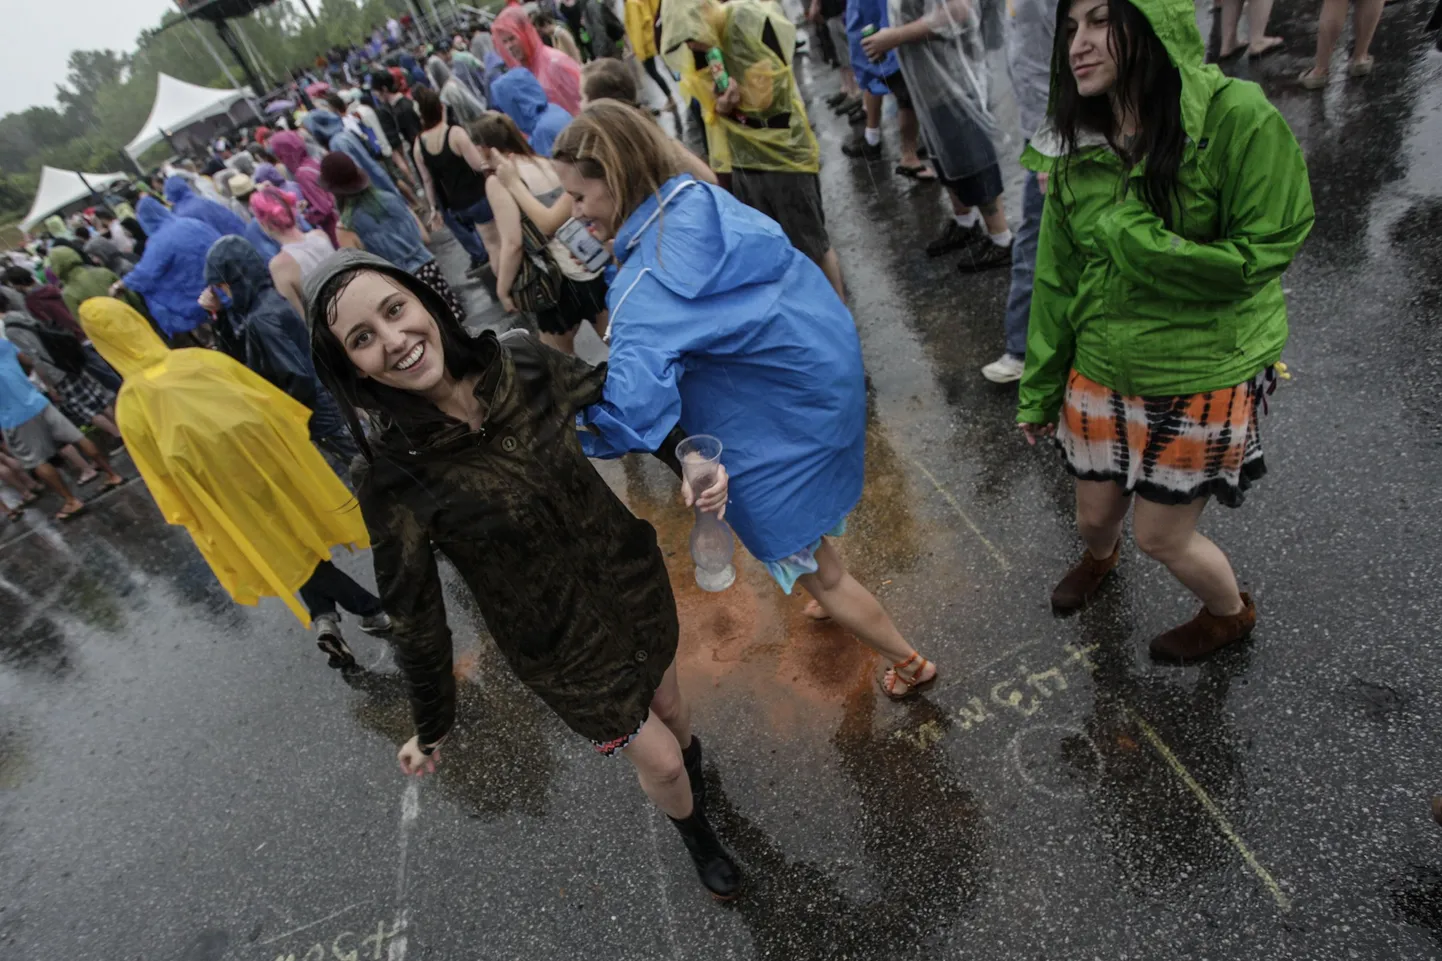 Neiud tantsivad Shaky Knees muusikafestivalil. Pilt on illustreeriv.